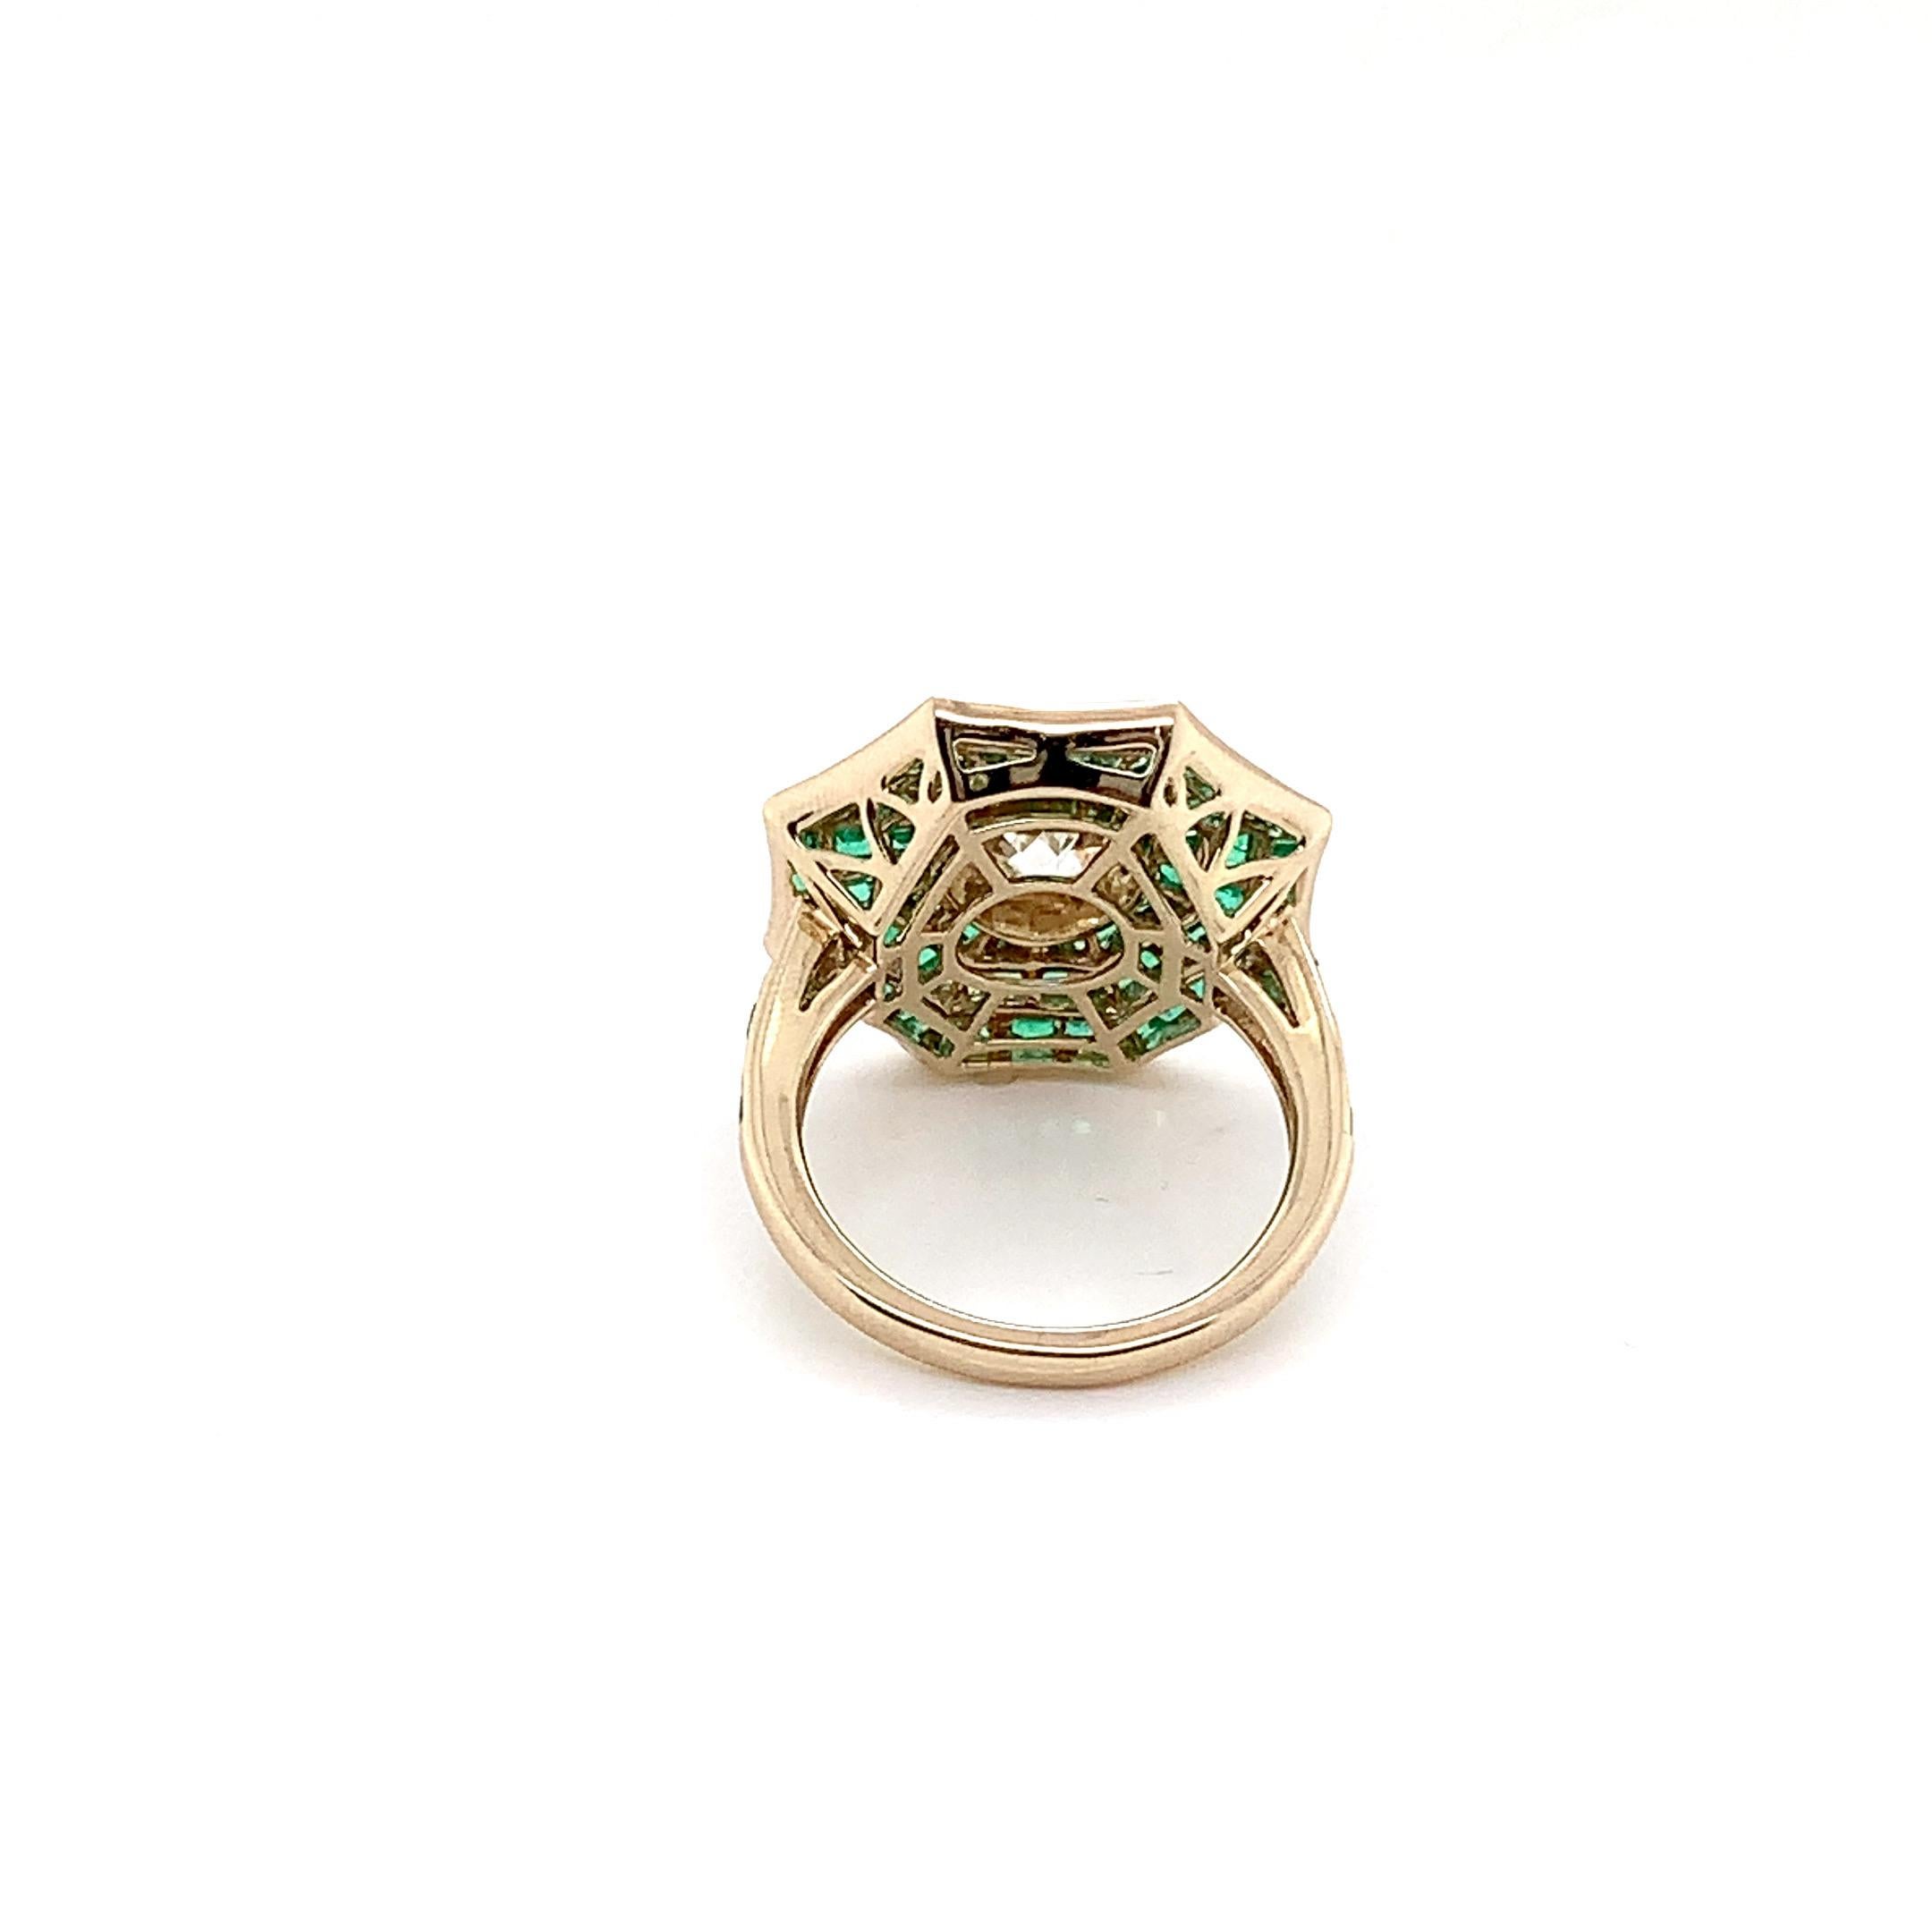 Cette bague en diamant est une création radieuse de REWA Jewelry qui marie harmonieusement l'allure des thèmes Art déco et l'élégance contemporaine. Elle témoigne d'un savoir-faire méticuleux et d'un design intemporel.

Inspirée de l'esthétique Art